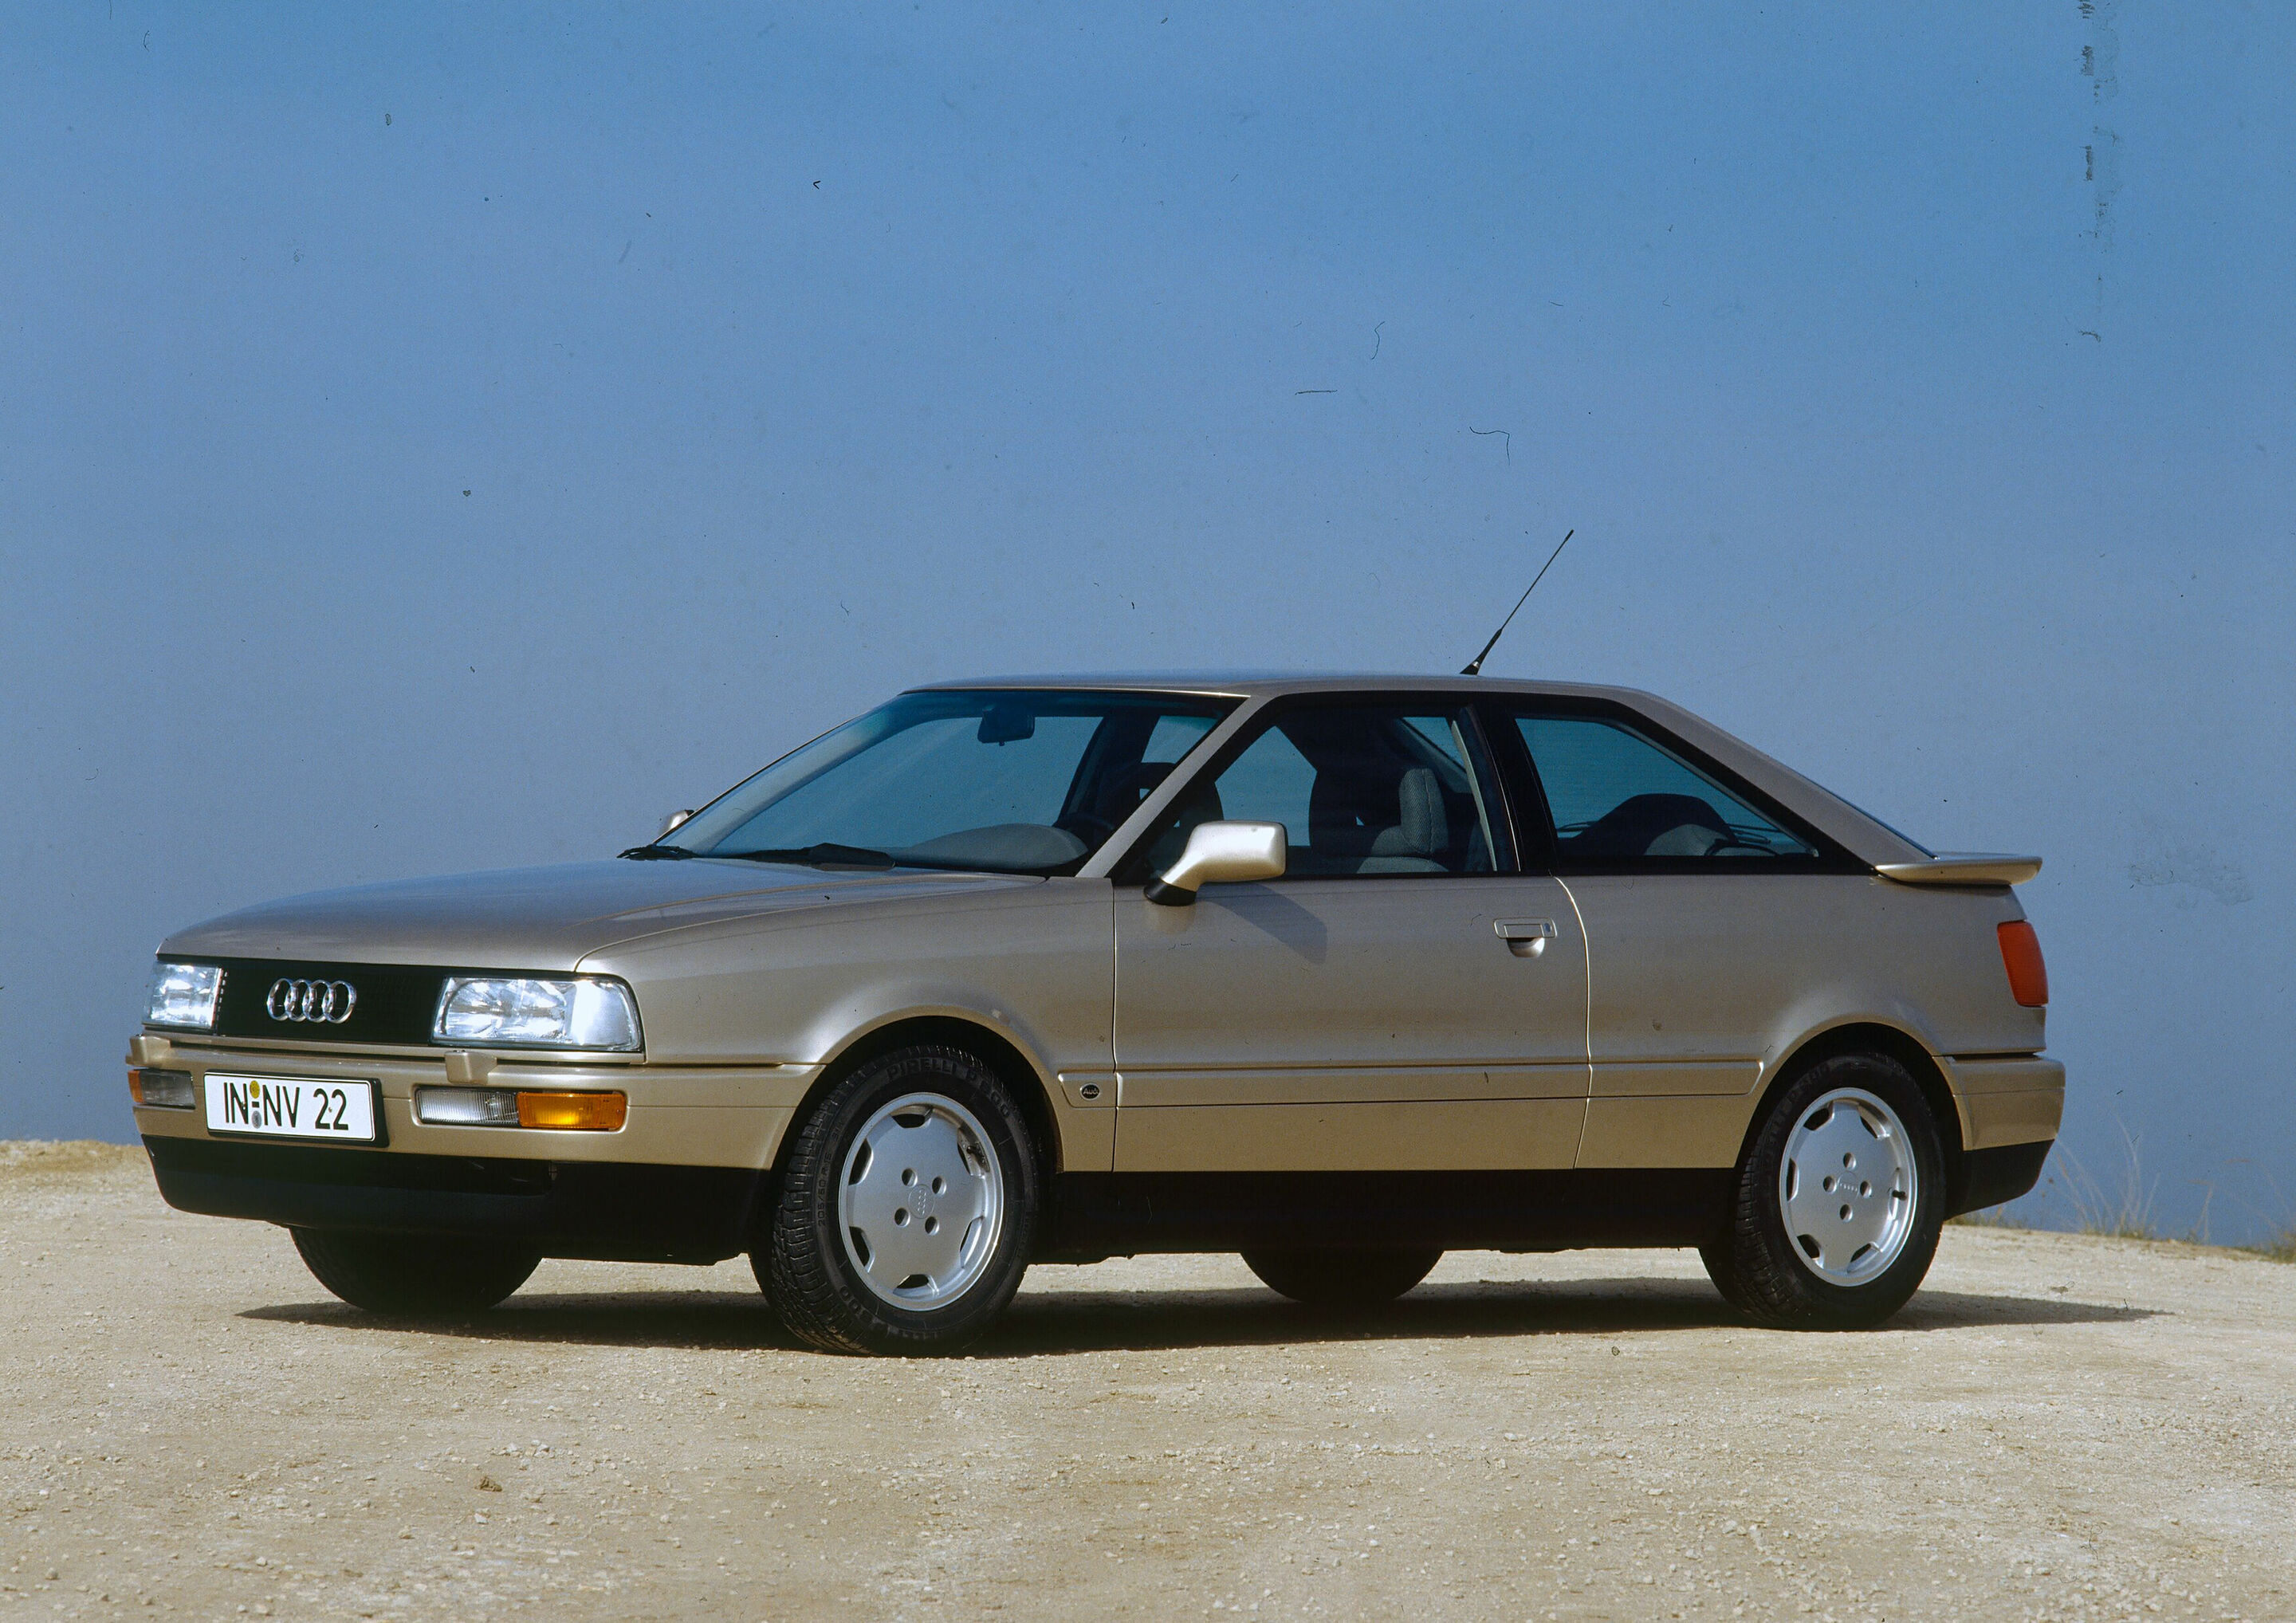 Audi Coupé 2.3E (B3), model year 1989